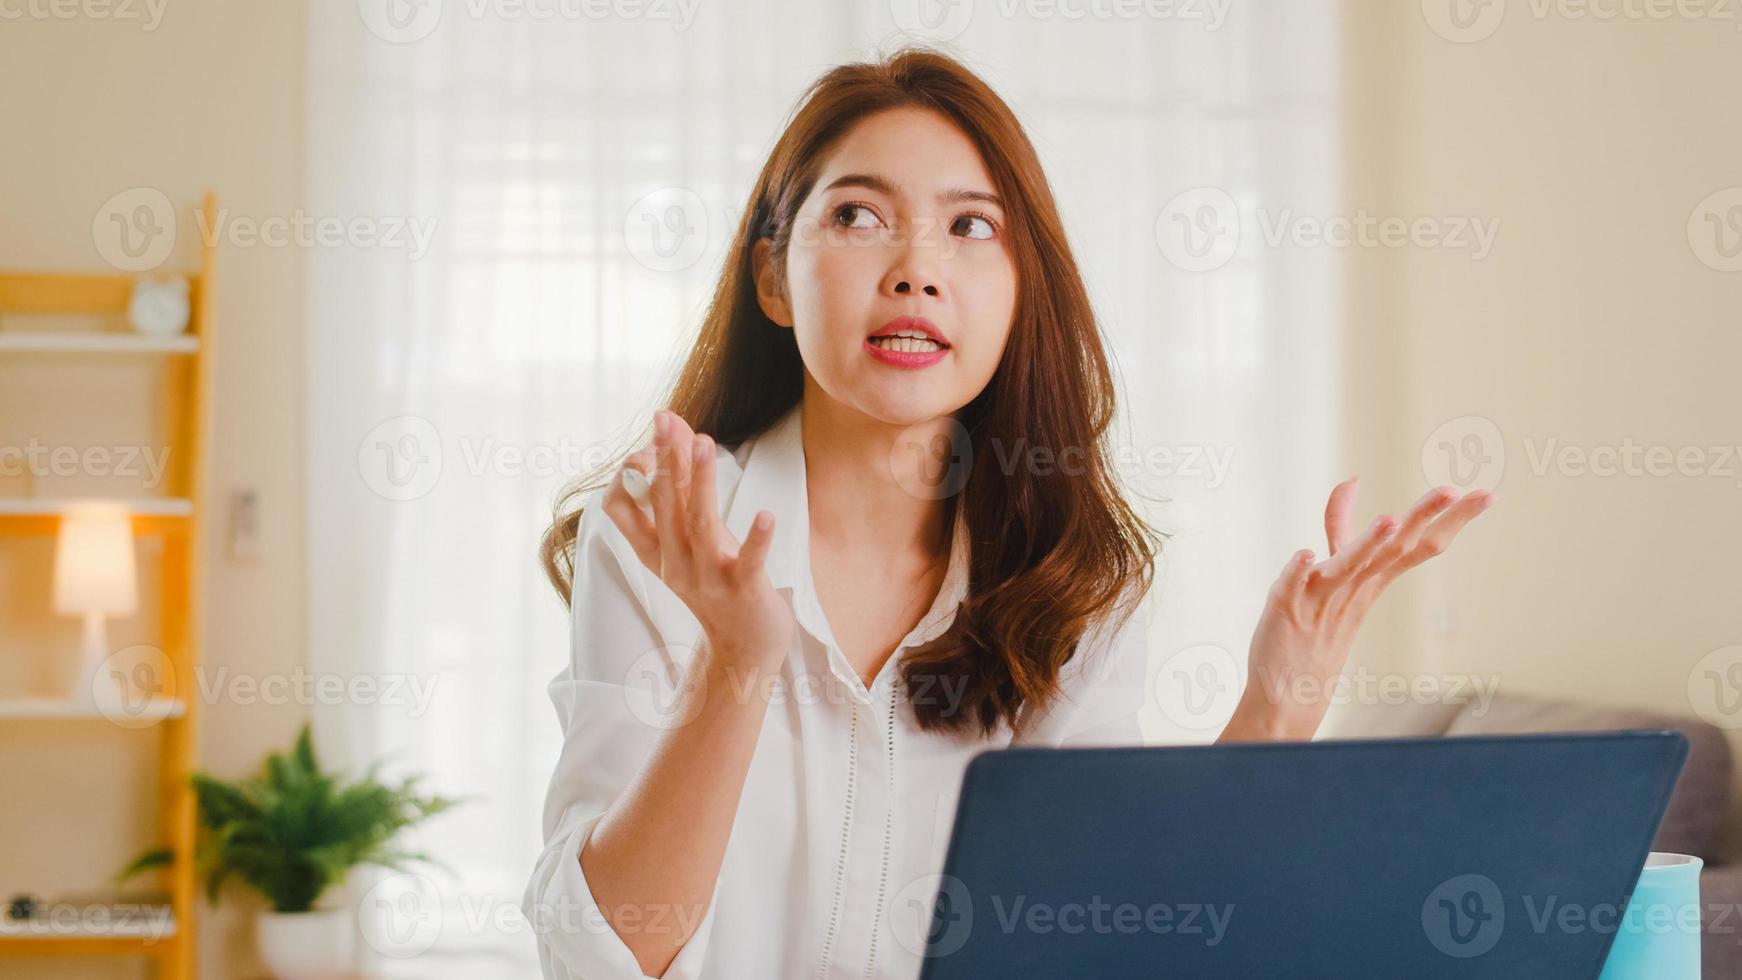 Aziatische zakenvrouw die laptop gebruikt, praat met collega's over het plan in een videogesprek terwijl ze slim vanuit huis in de woonkamer werkt. zelfisolatie, sociale afstand, quarantaine voor coronaviruspreventie. foto